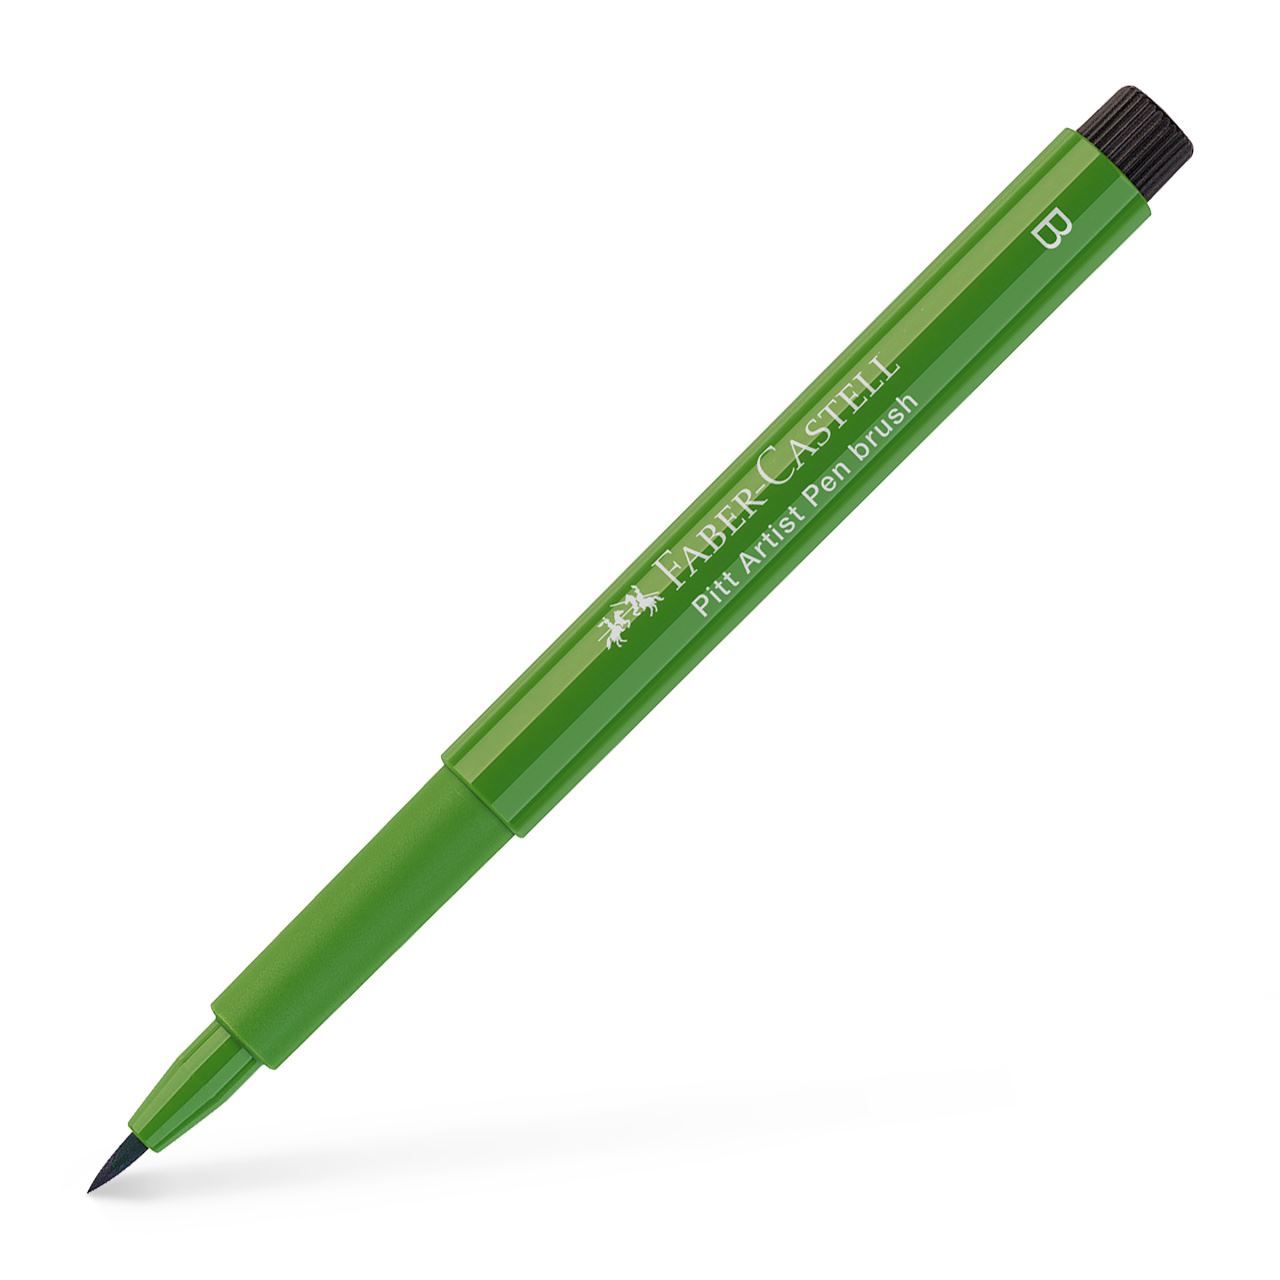 Faber-Castell - Pitt Artist Pen Brush India ink pen, permanent green olive